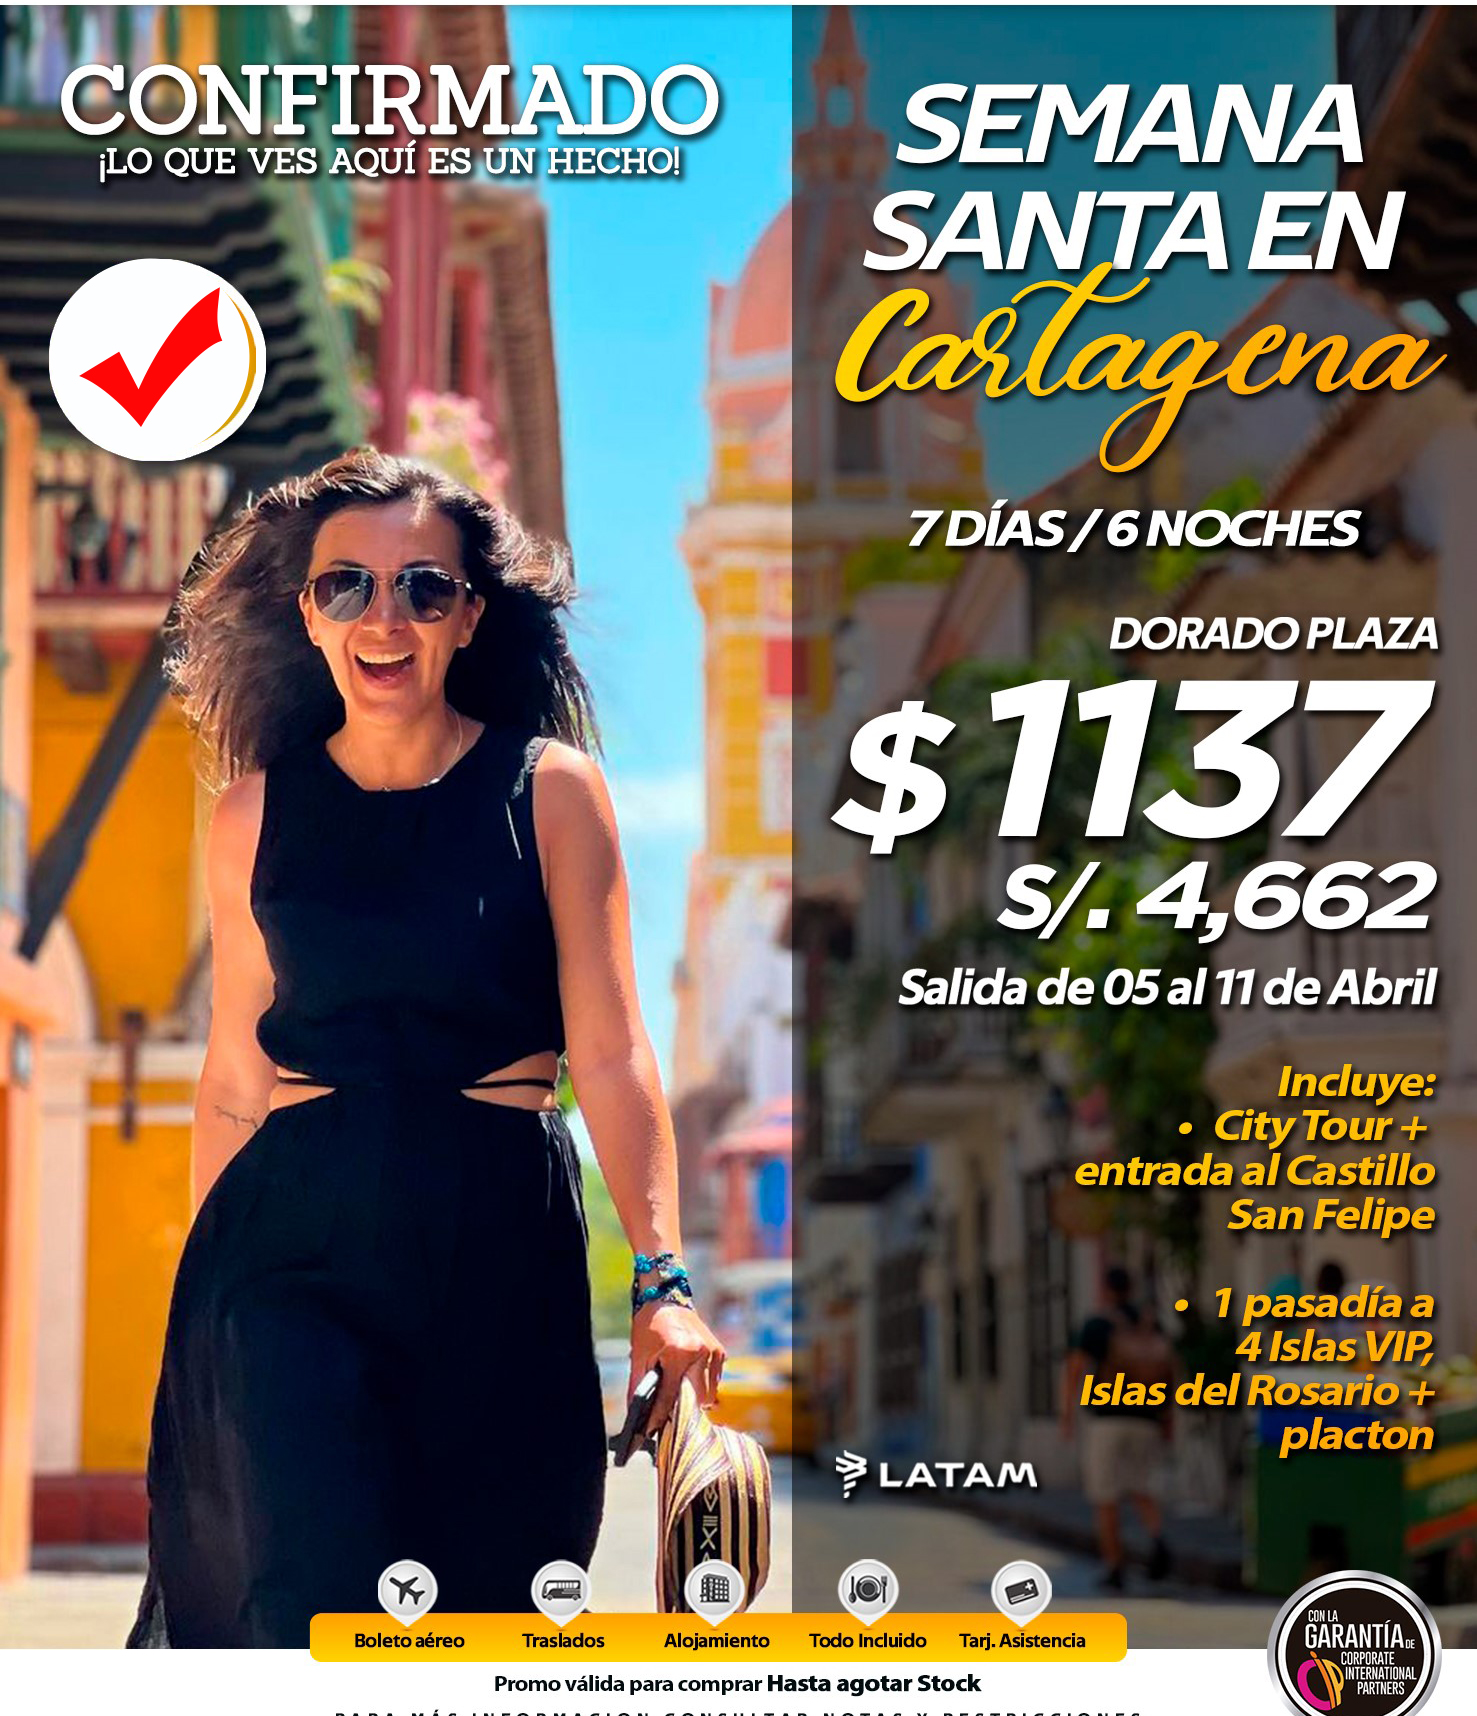 En Semana Santa enamórate de Cartagena